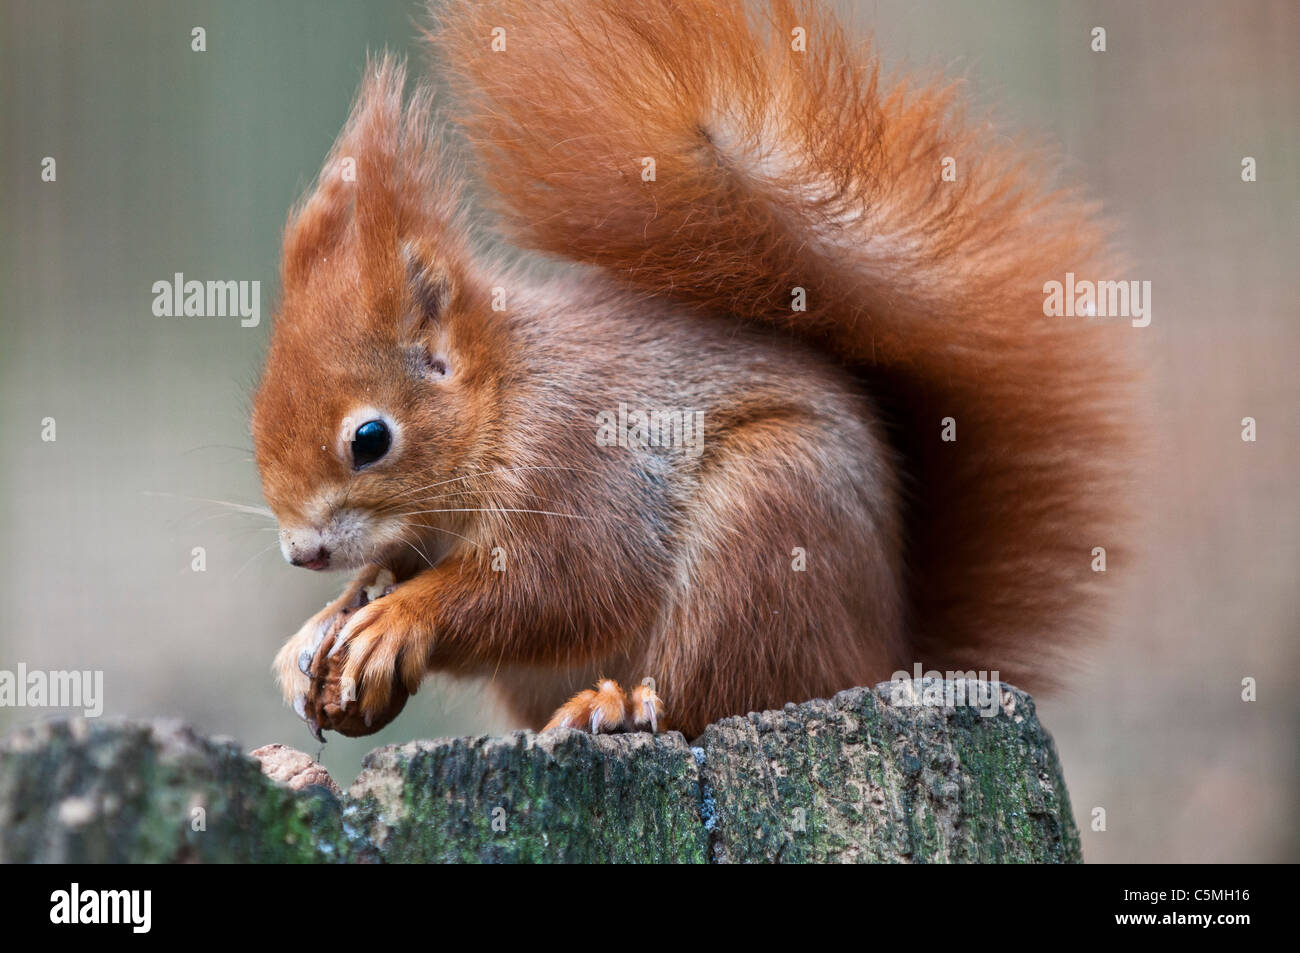 Red Squirrel, Sciurus vulgaris, eating a nut Stock Photo